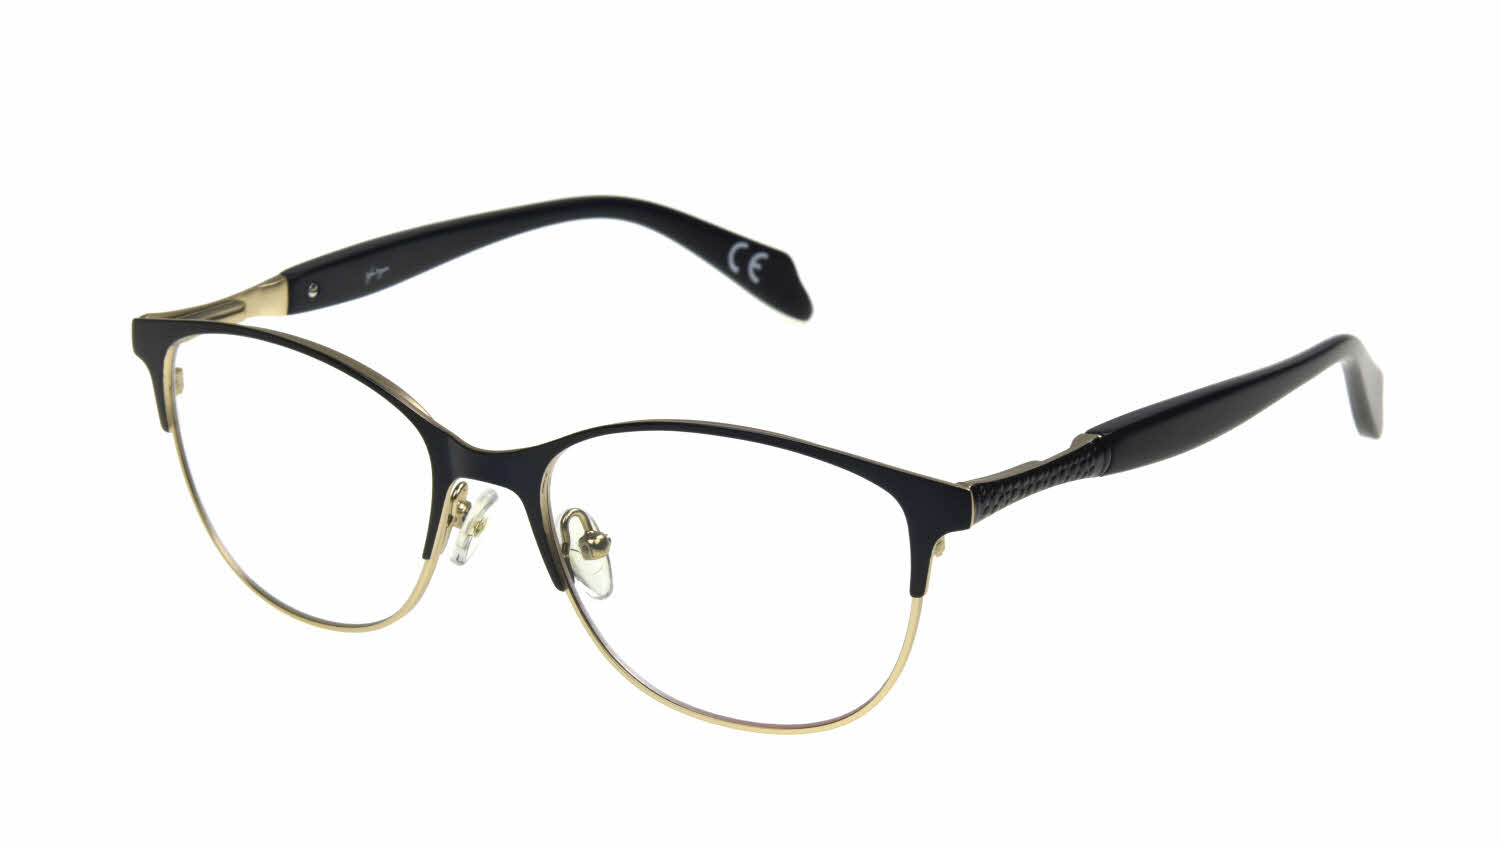 Sofia Vergara Enrica Eyeglasses | Free Shipping